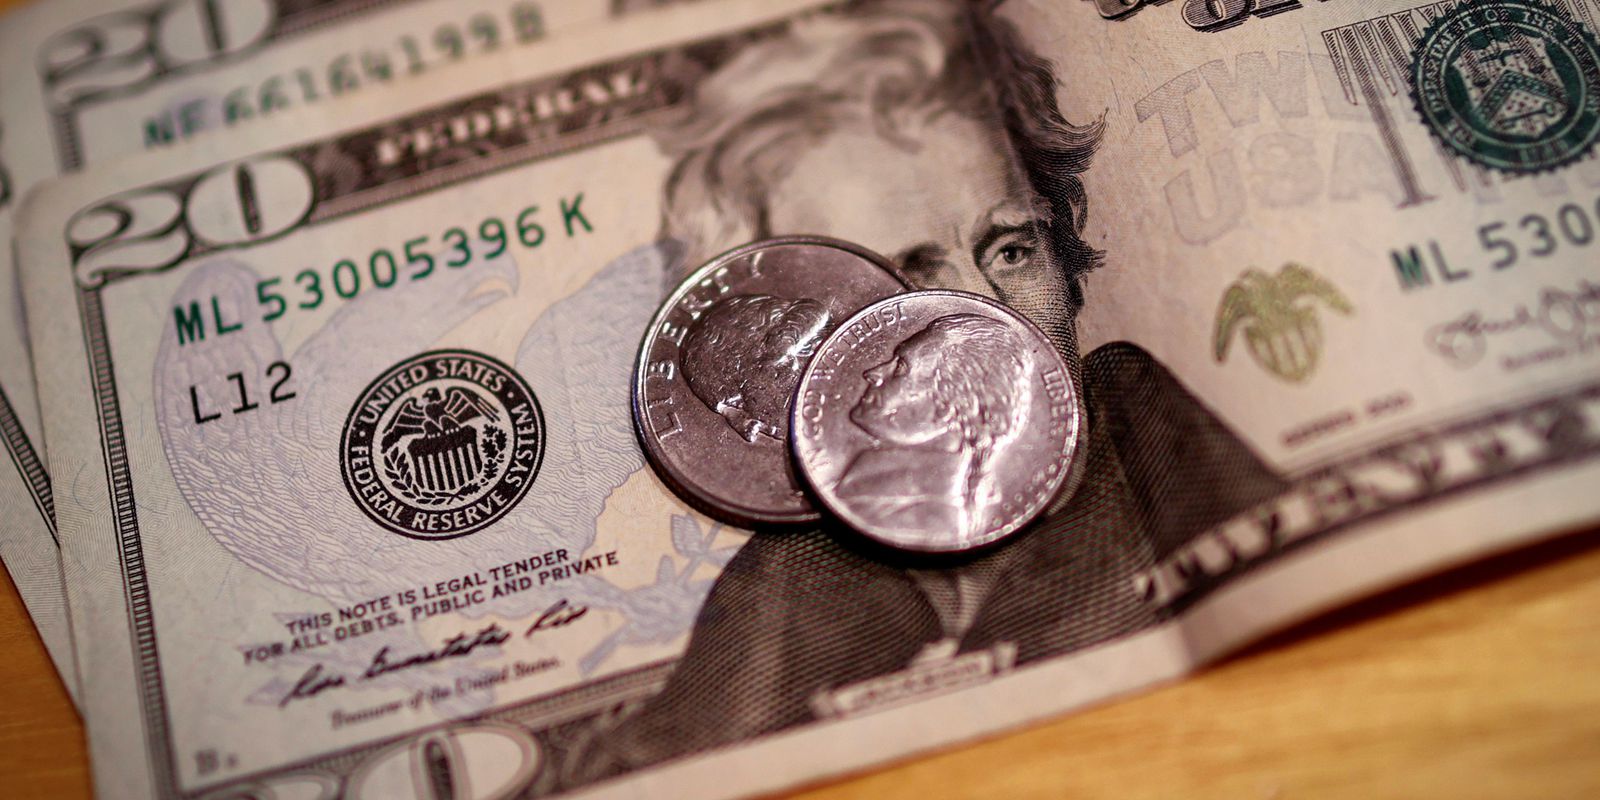 Dólar cai para R$ 5,10 após declarações de Haddad sobre reformas